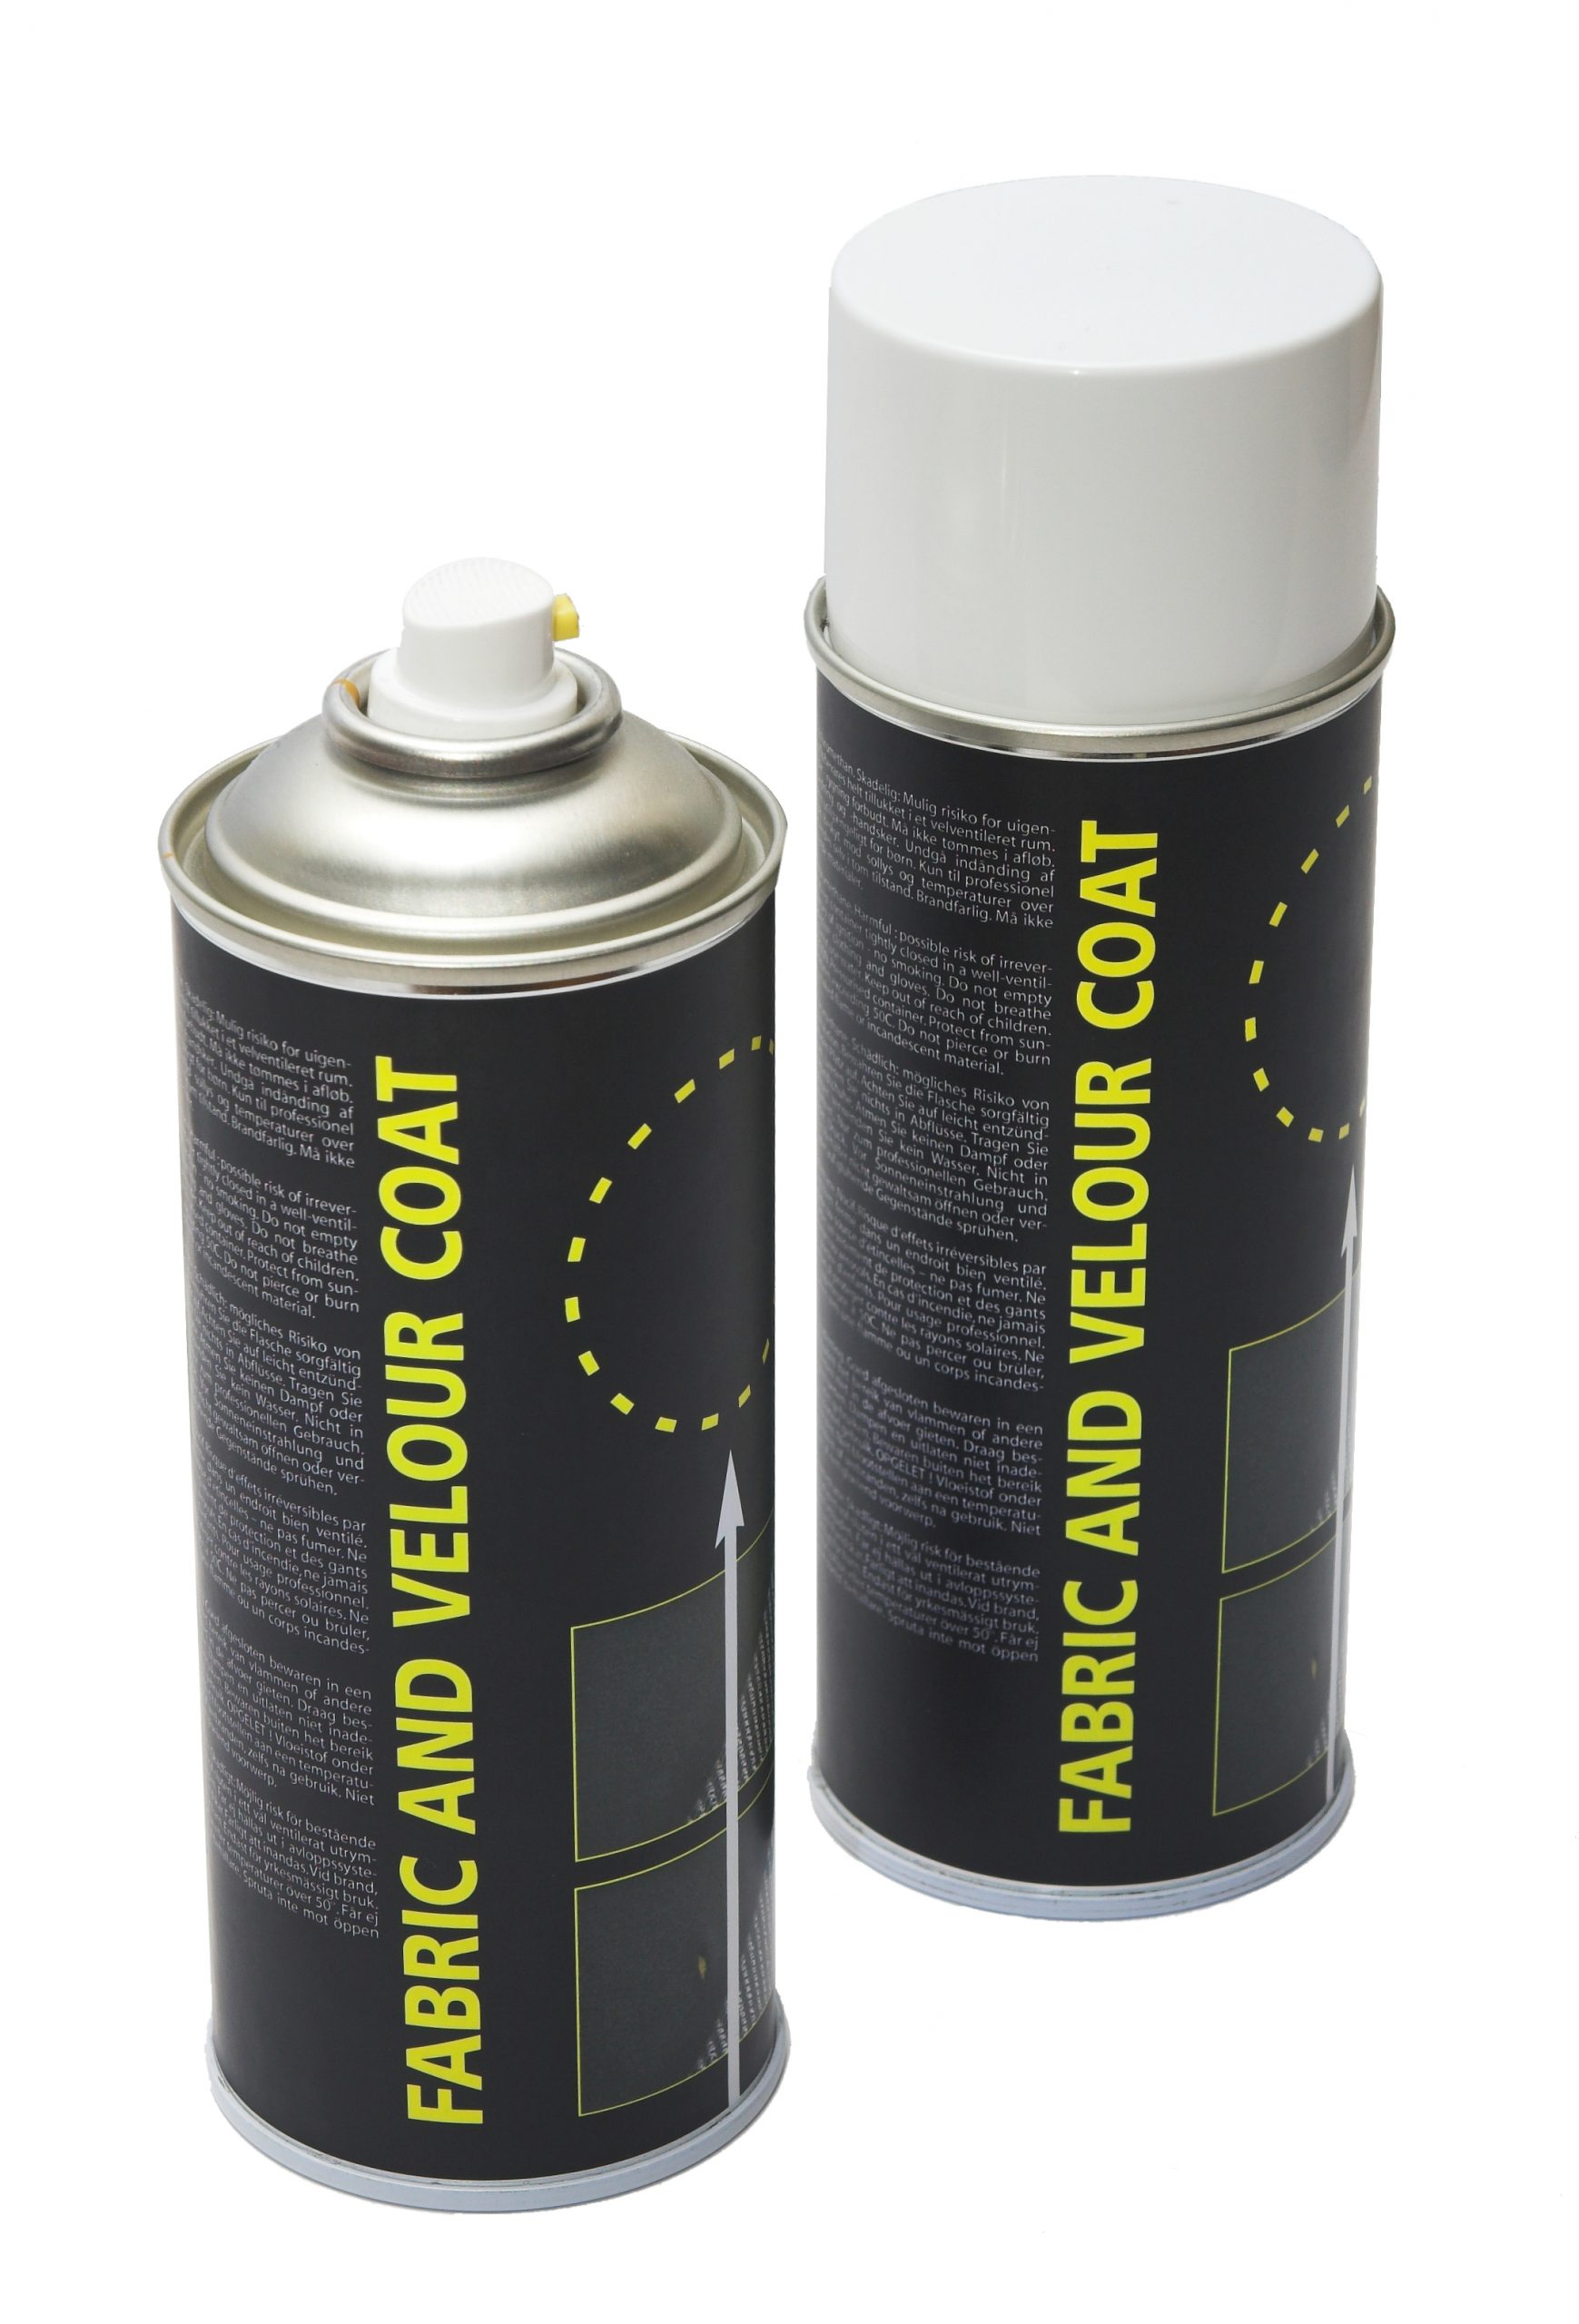 Bordenden kompliceret Punktlighed Stof maling (Gulvtæppe og Velour) på spray efter farvekode – Smartspray